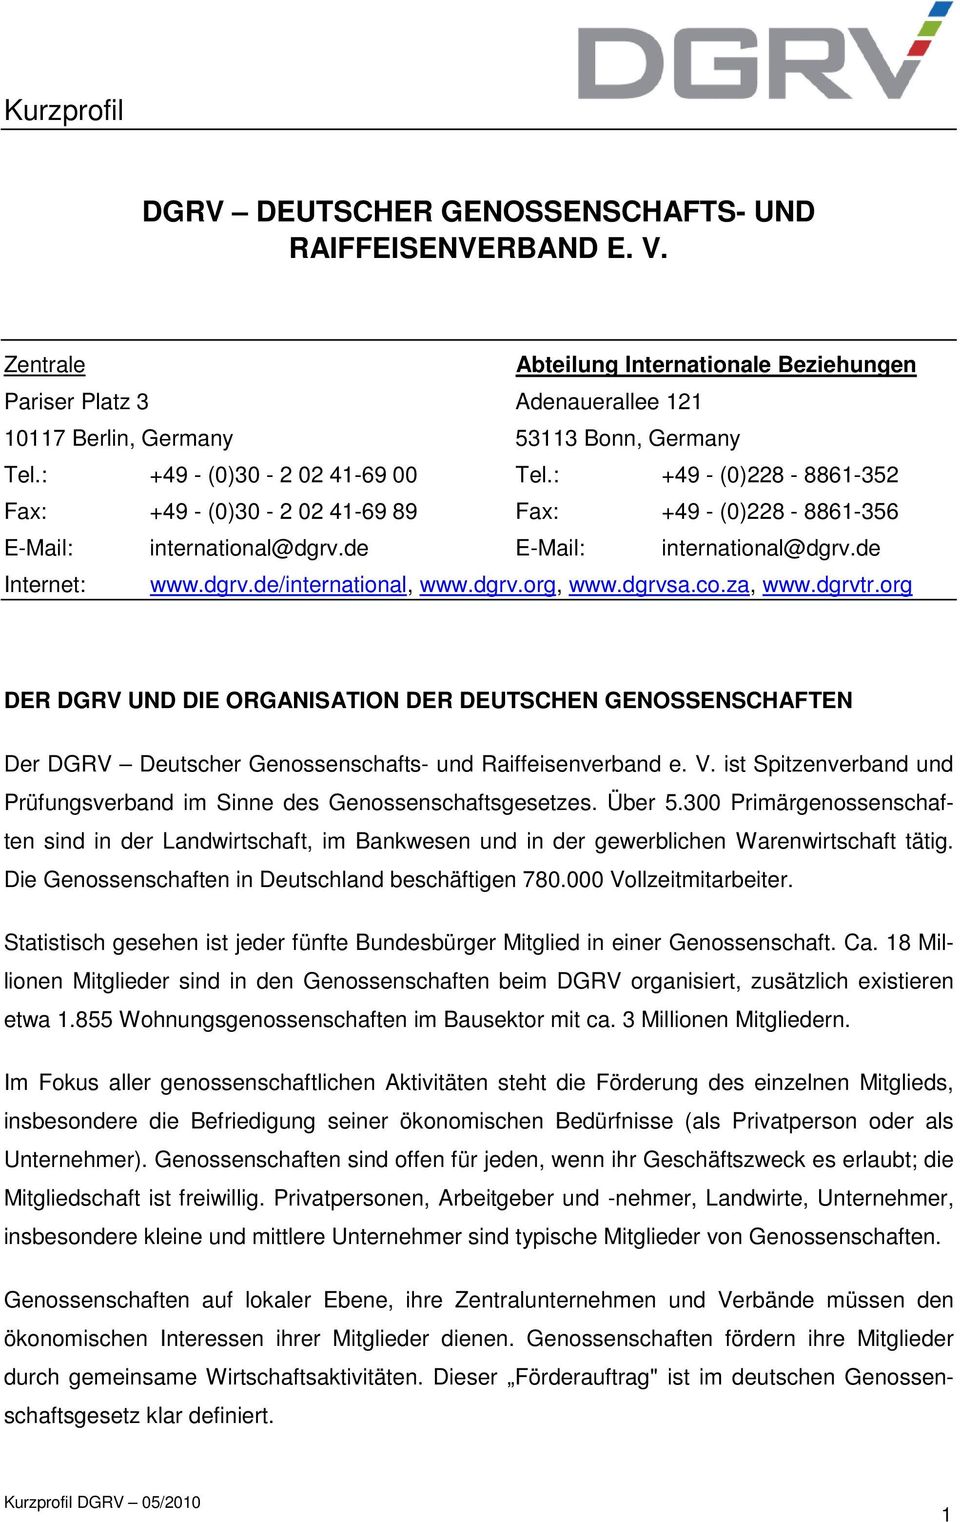 dgrv.org, www.dgrvsa.co.za, www.dgrvtr.org DER DGRV UND DIE ORGANISATION DER DEUTSCHEN GENOSSENSCHAFTEN Der DGRV Deutscher Genossenschafts- und Raiffeisenverband e. V.